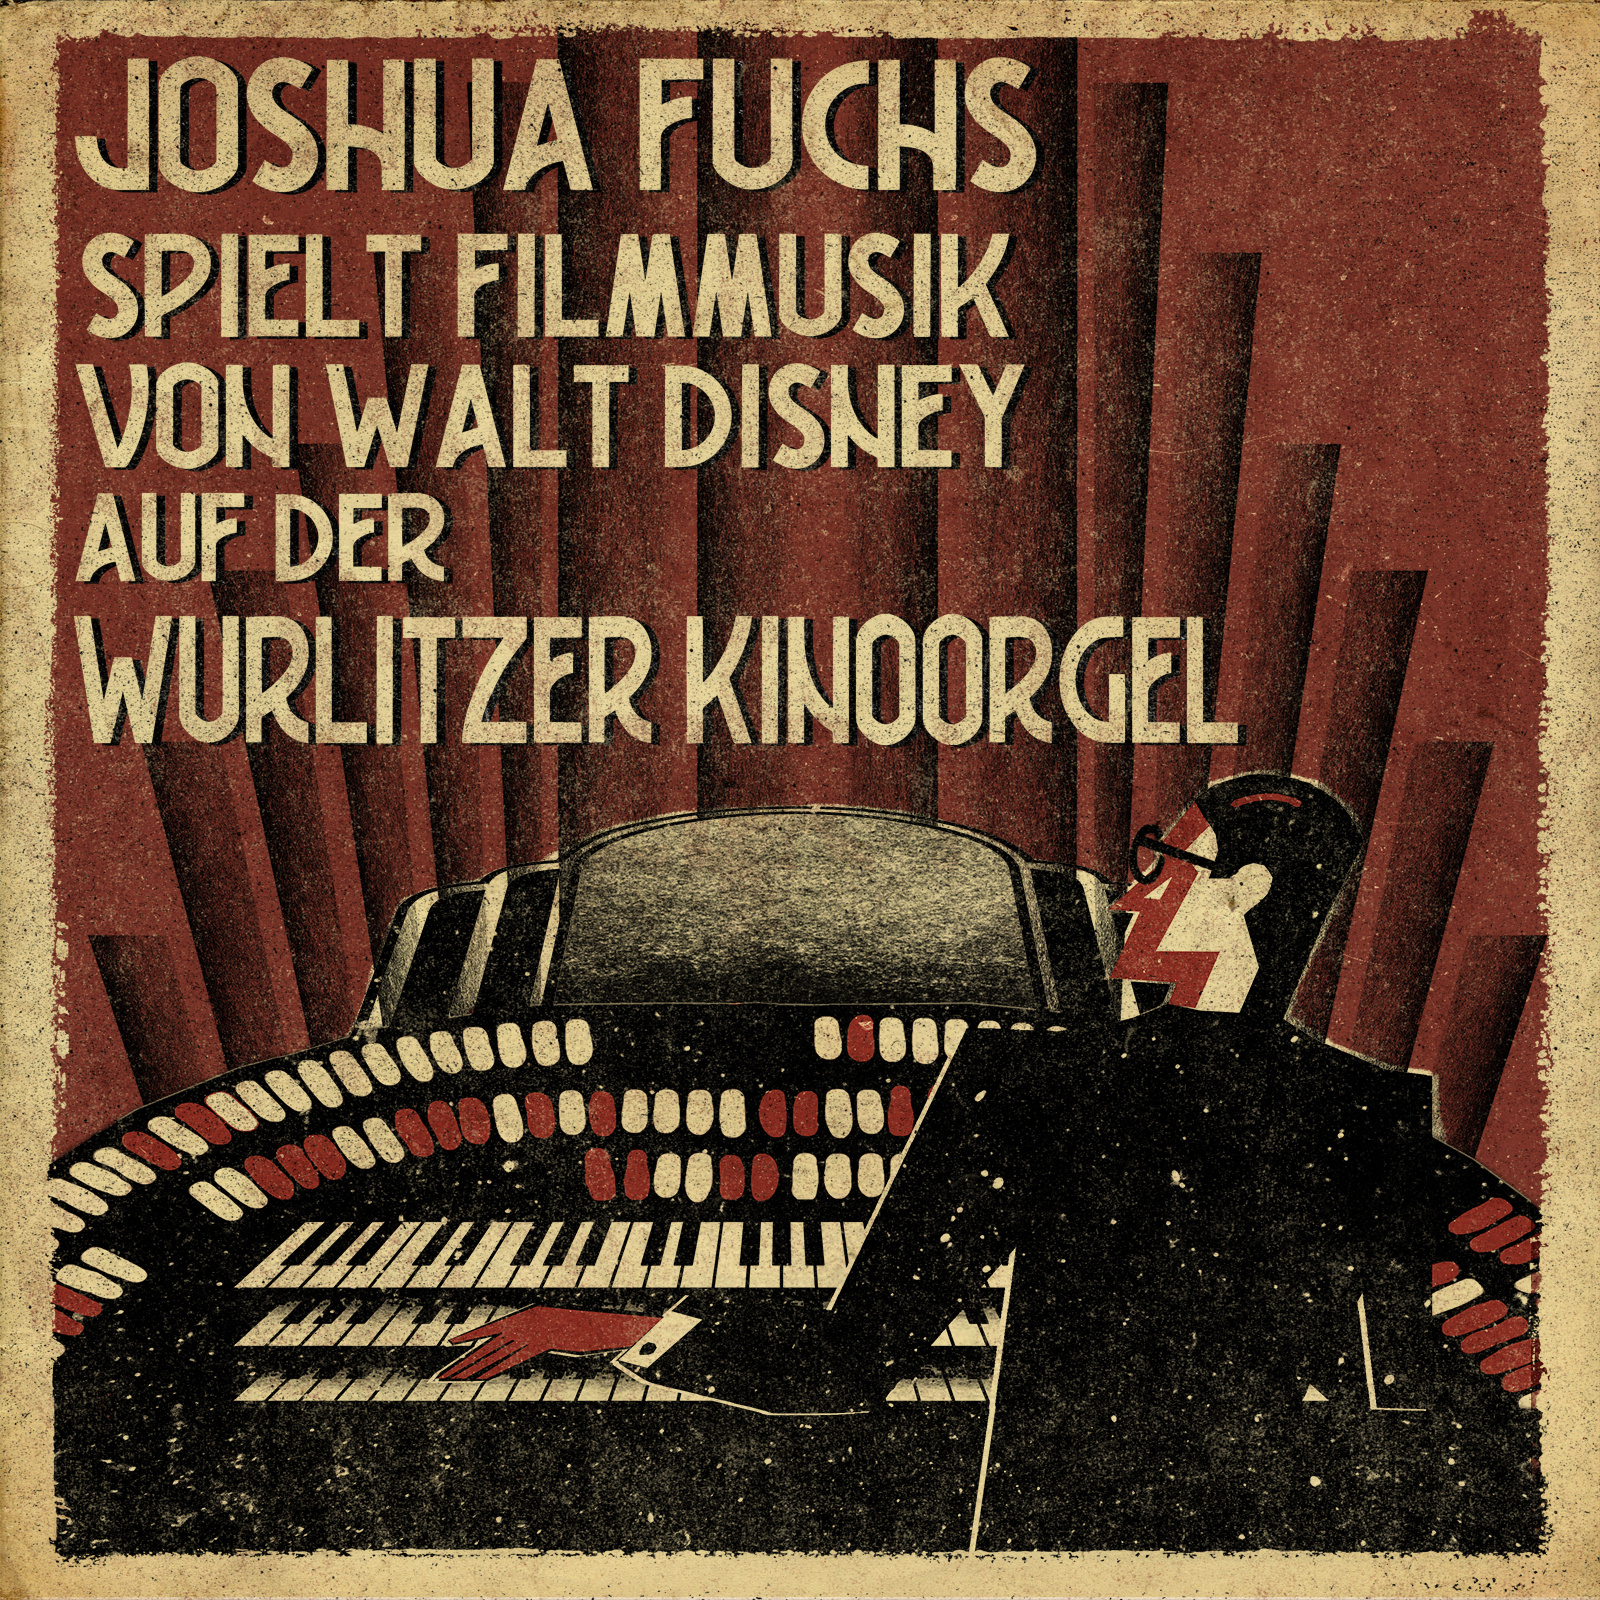 Joshua Fuchs spielt Filmmusik an der Wurlitzer Kinoorgel